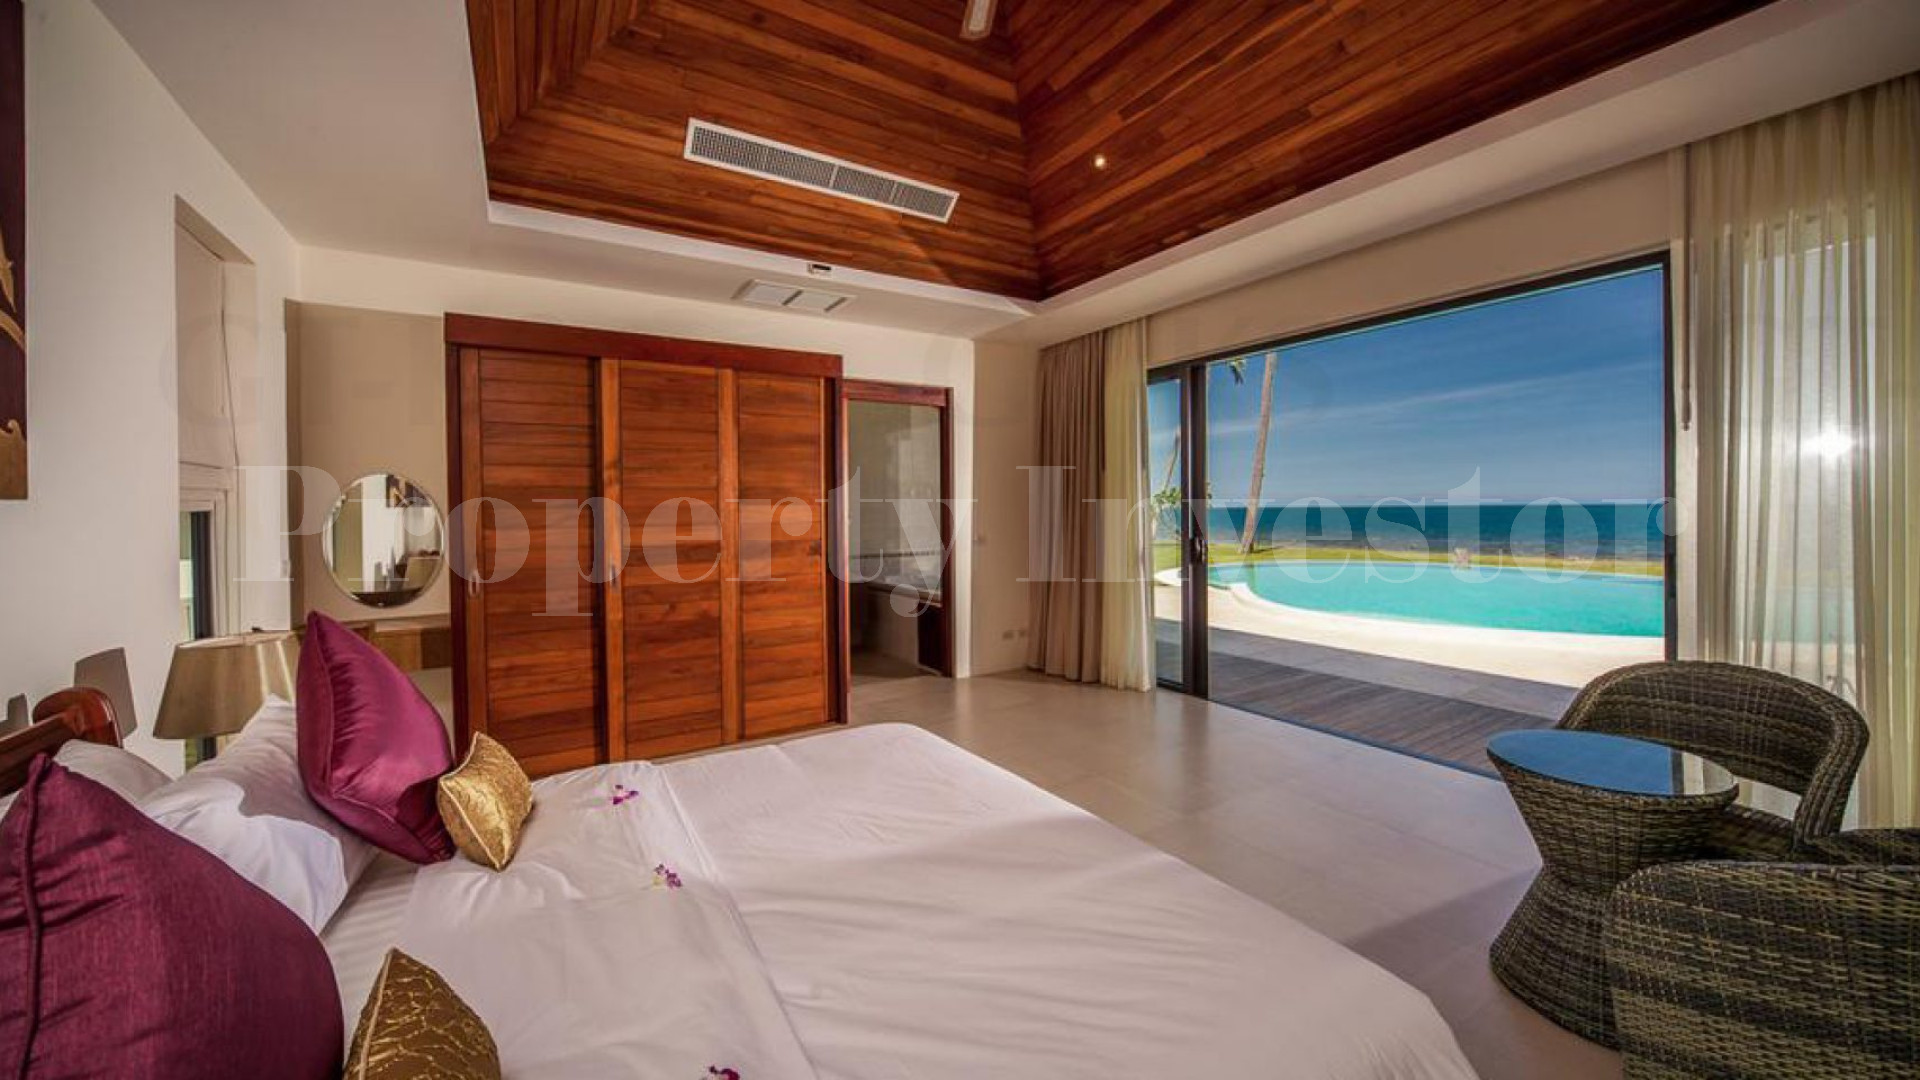 Прекрасная современная вилла на 4 спальни на пляже со своим приватным выходом к пляжу на о. Самуи, Тайланд